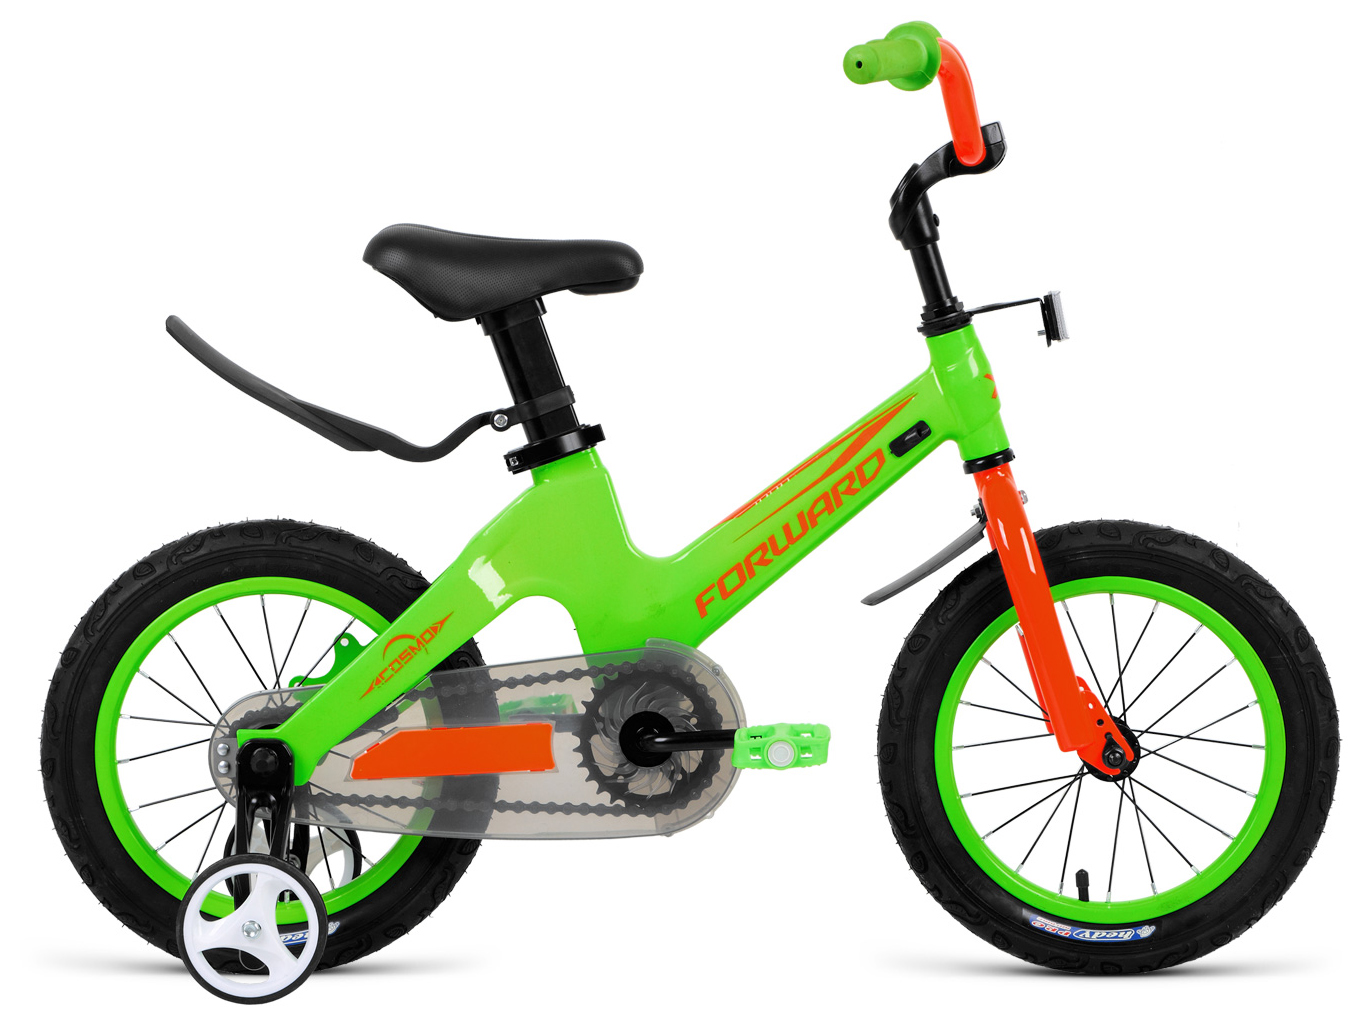  Отзывы о Детском велосипеде Forward Cosmo 14 (2021) 2021